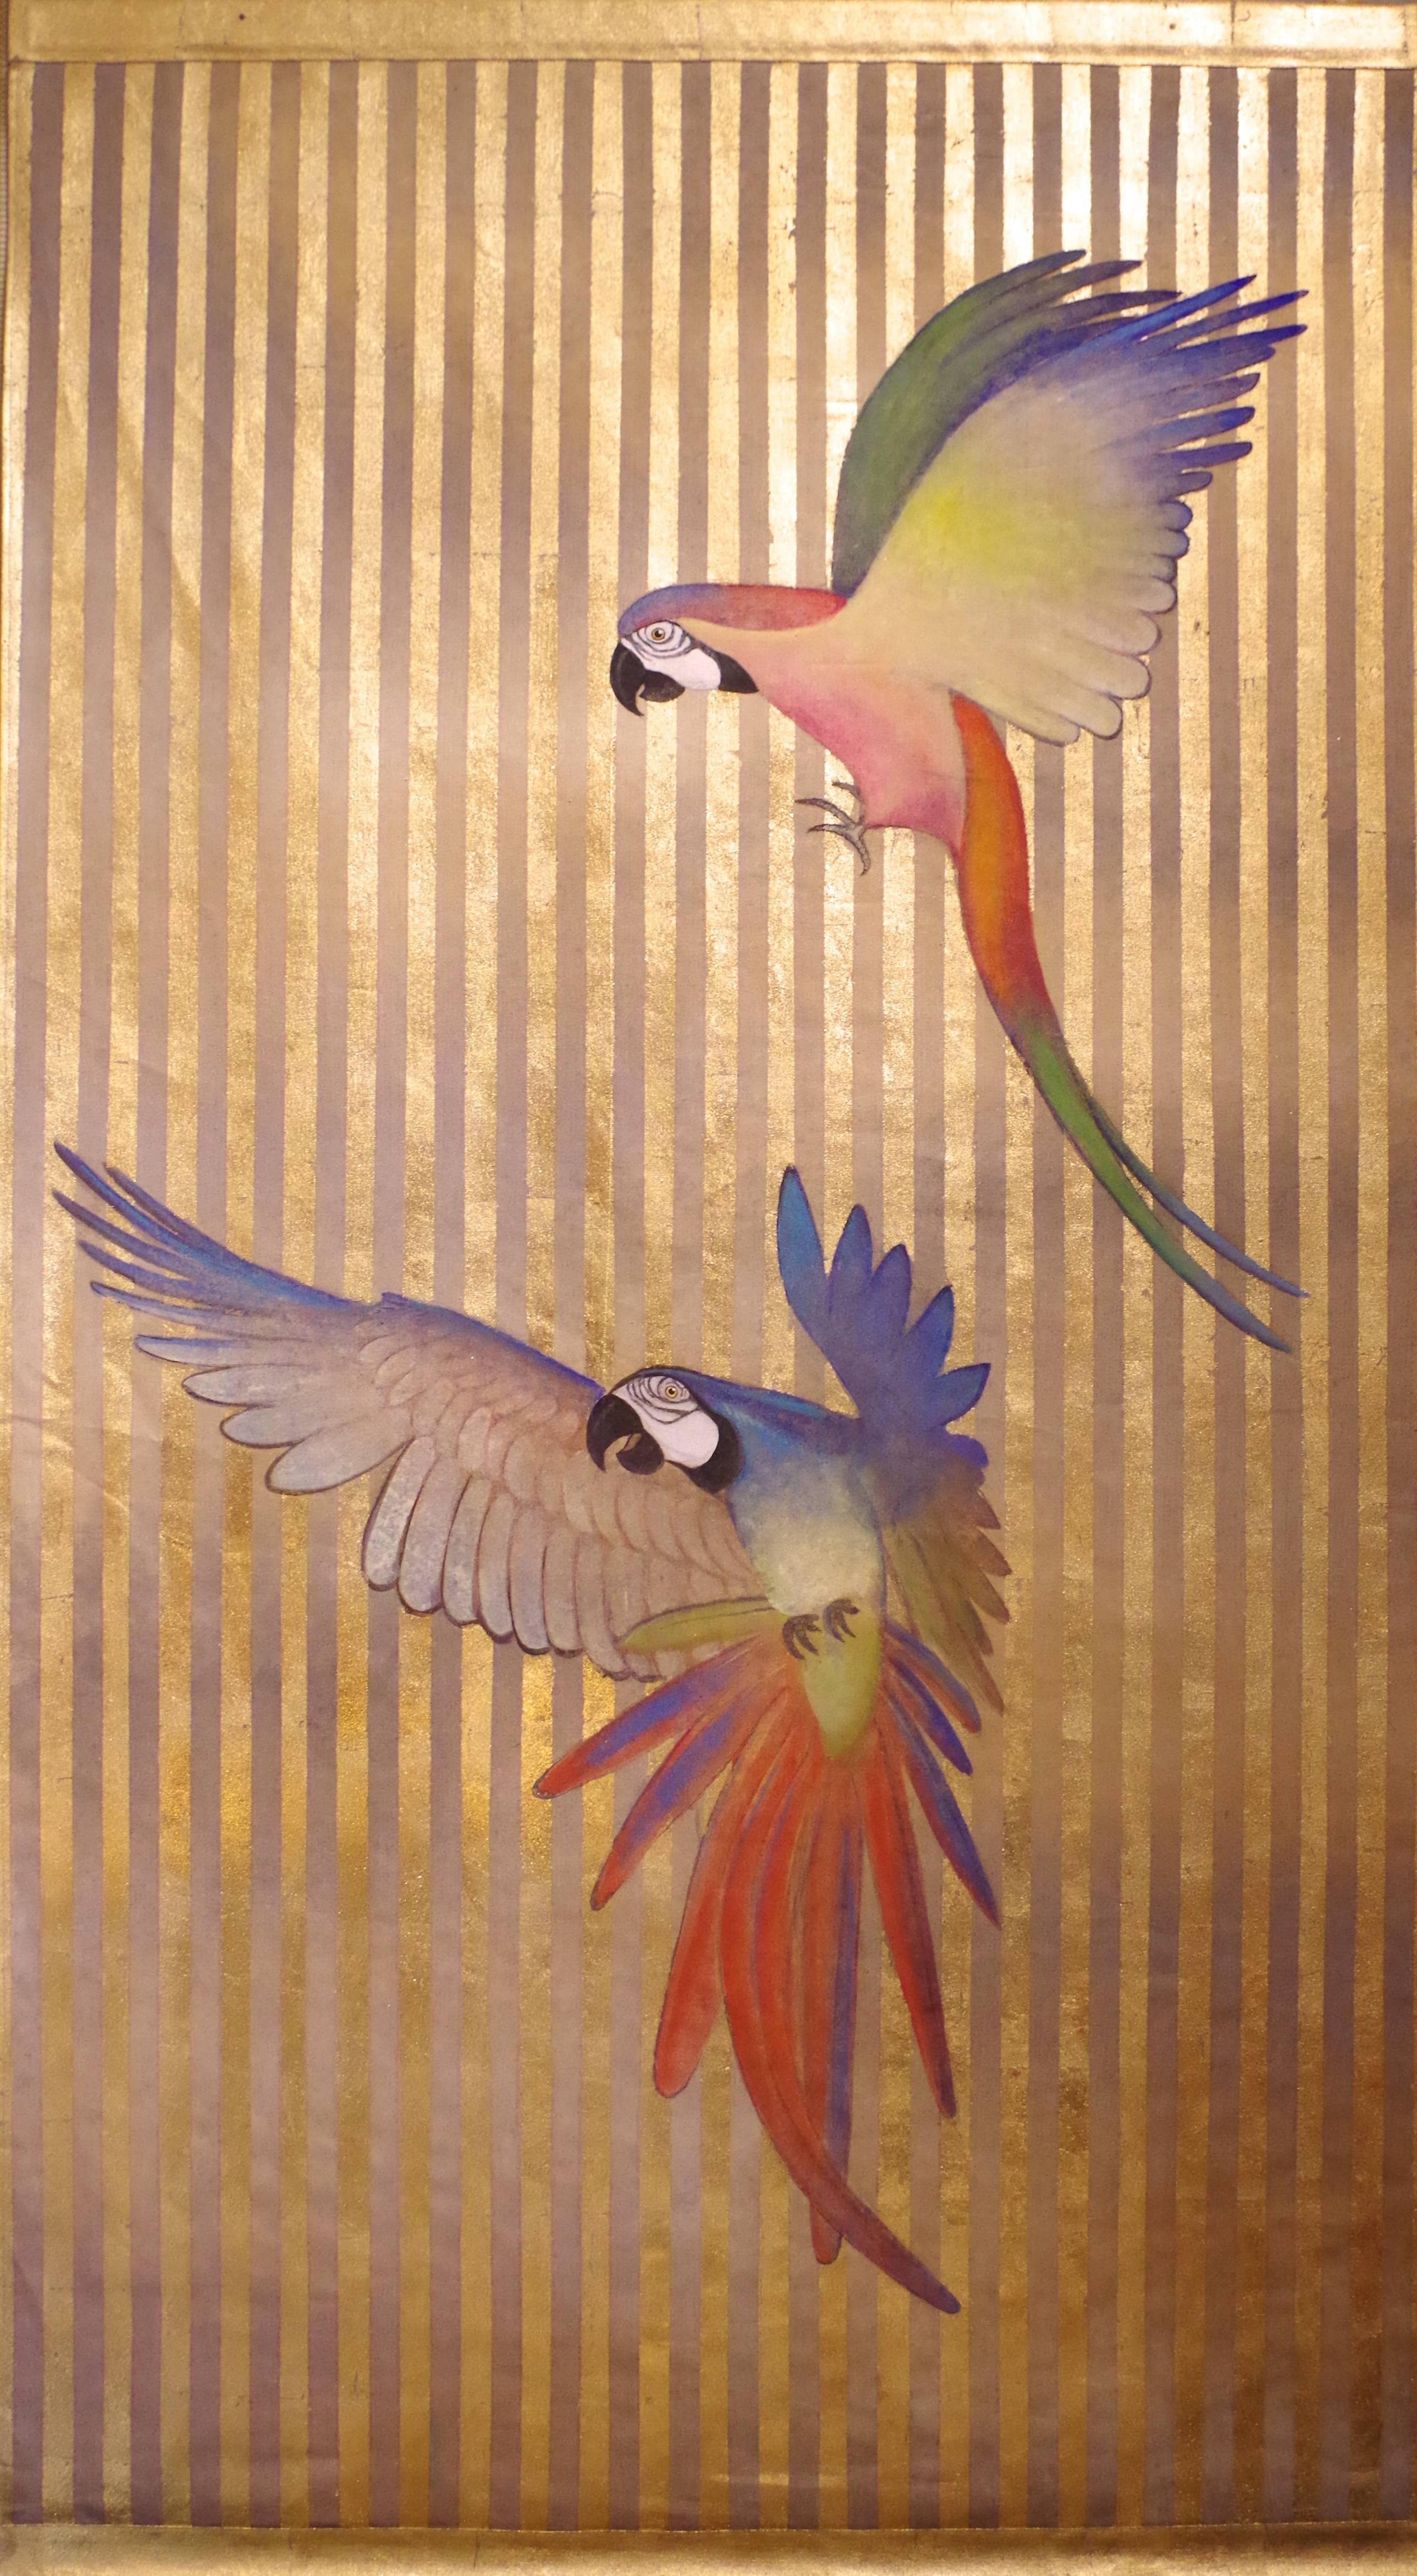 Paar gemalte Leinwand, die zwei fliegende bunte Papageien auf vergoldetem und braun gestreiftem Hintergrund darstellen.

Rohleinwand aus Leinen, handbemalt mit natürlichen Pigmenten und mit Kupferblatt vergoldetem Hintergrund. Die Leinwand ist auf